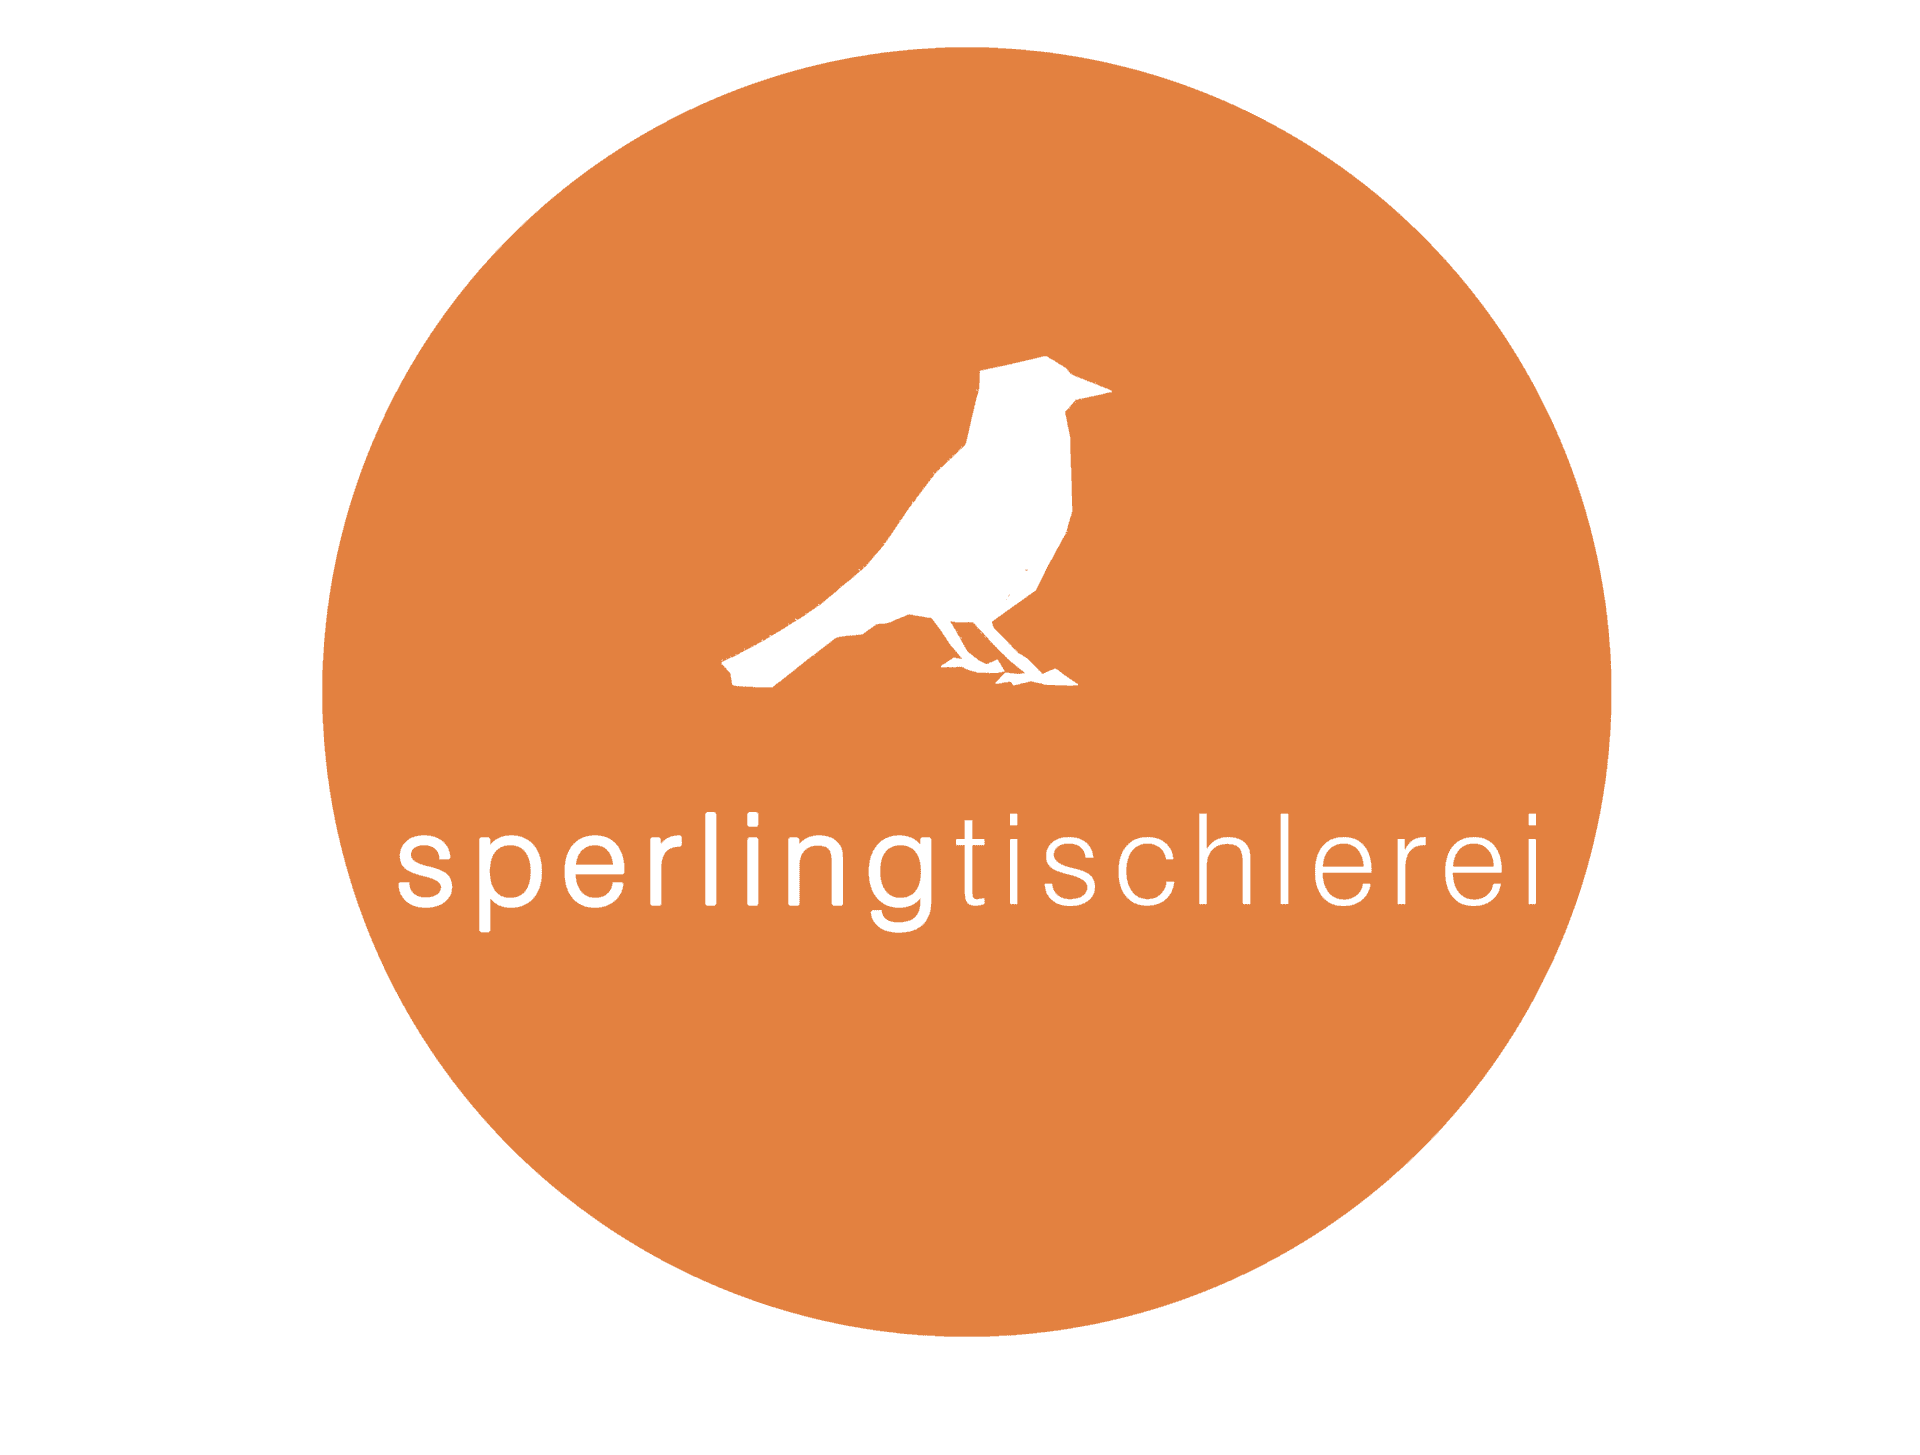 (c) Sperling-tischlerei.de